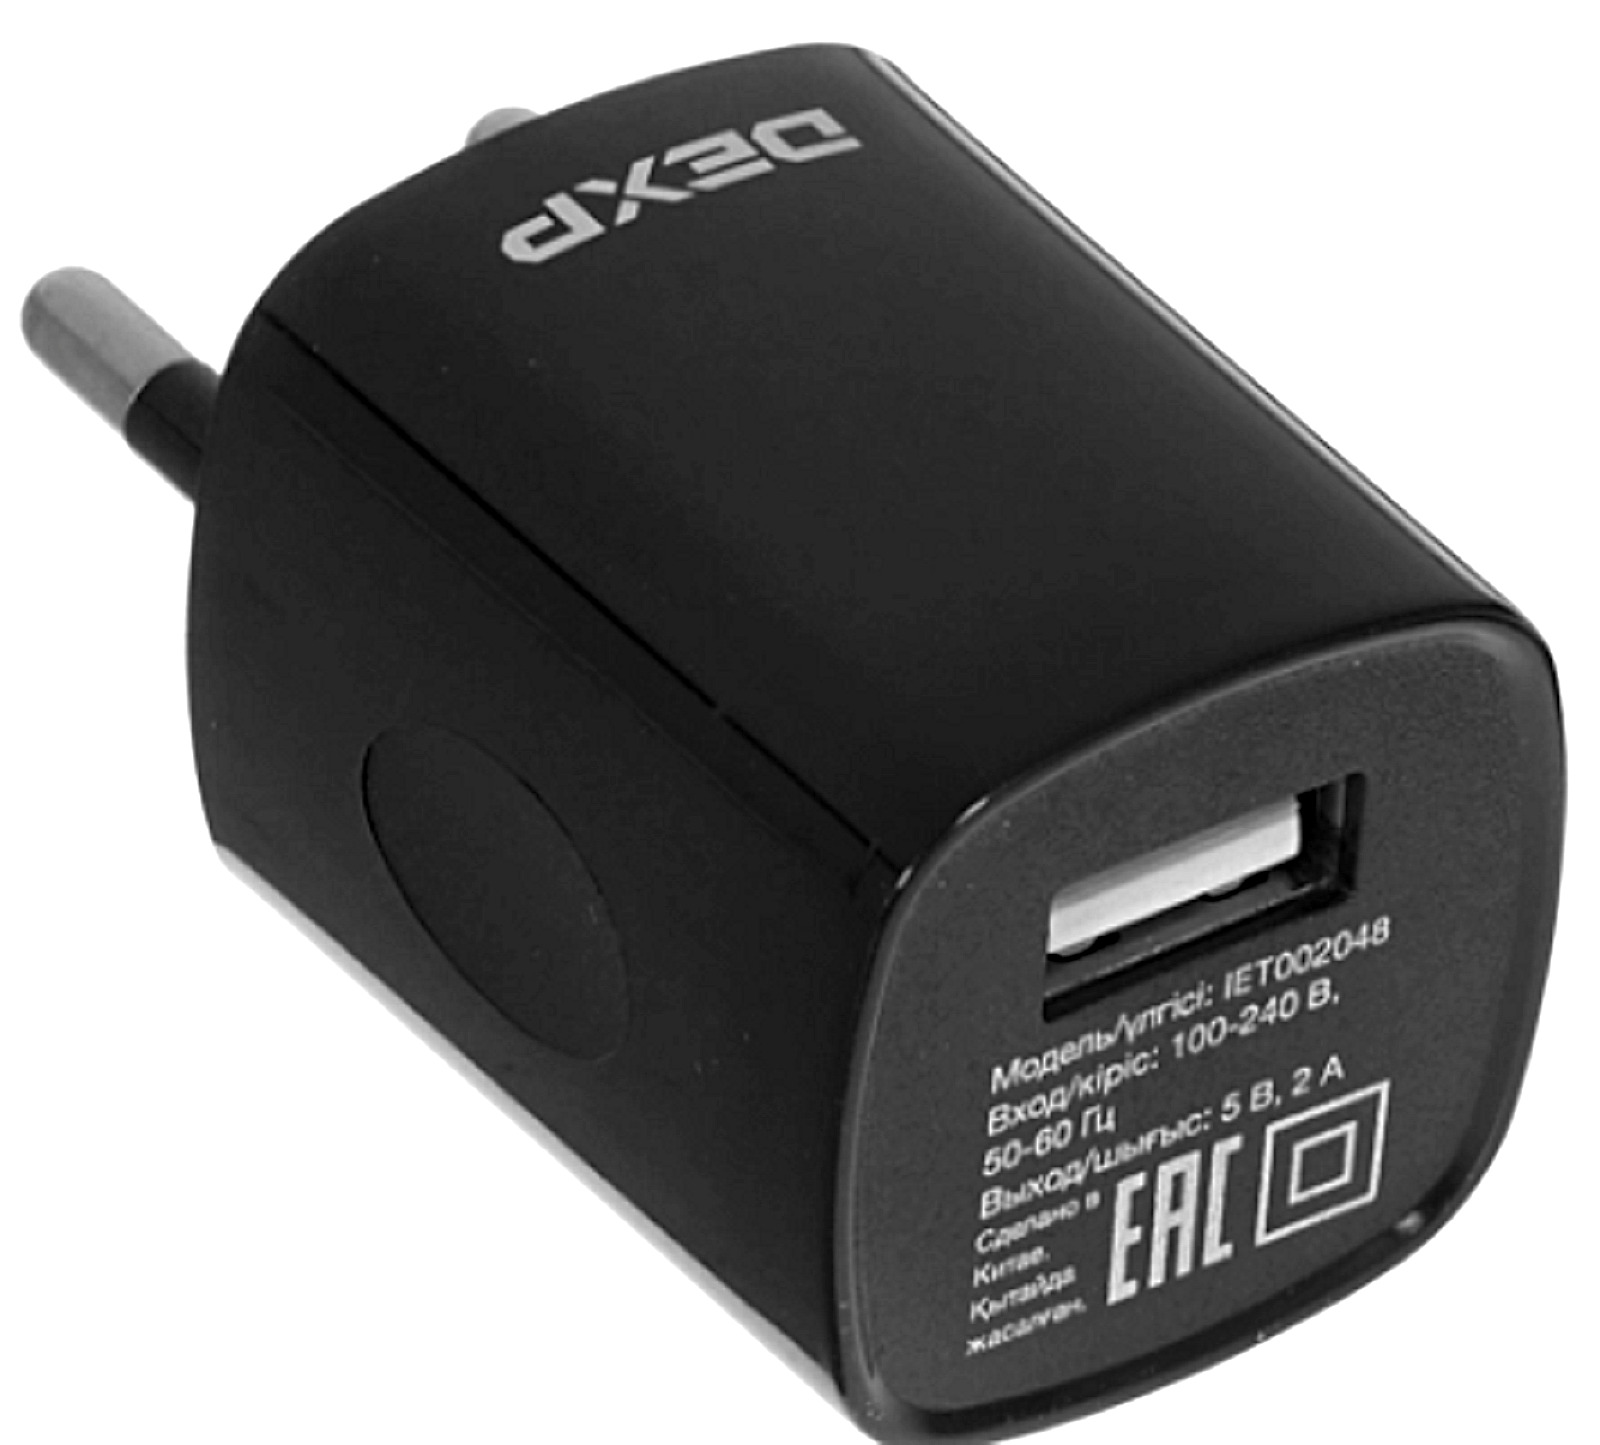 Dexp зарядное. Зарядное устройство DEXP iet002048. Зарядное устройство СЗУ DEXP iet002048. Сетевое зарядное устройство DEXP iet002048 черный. СЗУ USB DEXP iet002048 Black (10w/2a/1xusb/Plastic/Mini).